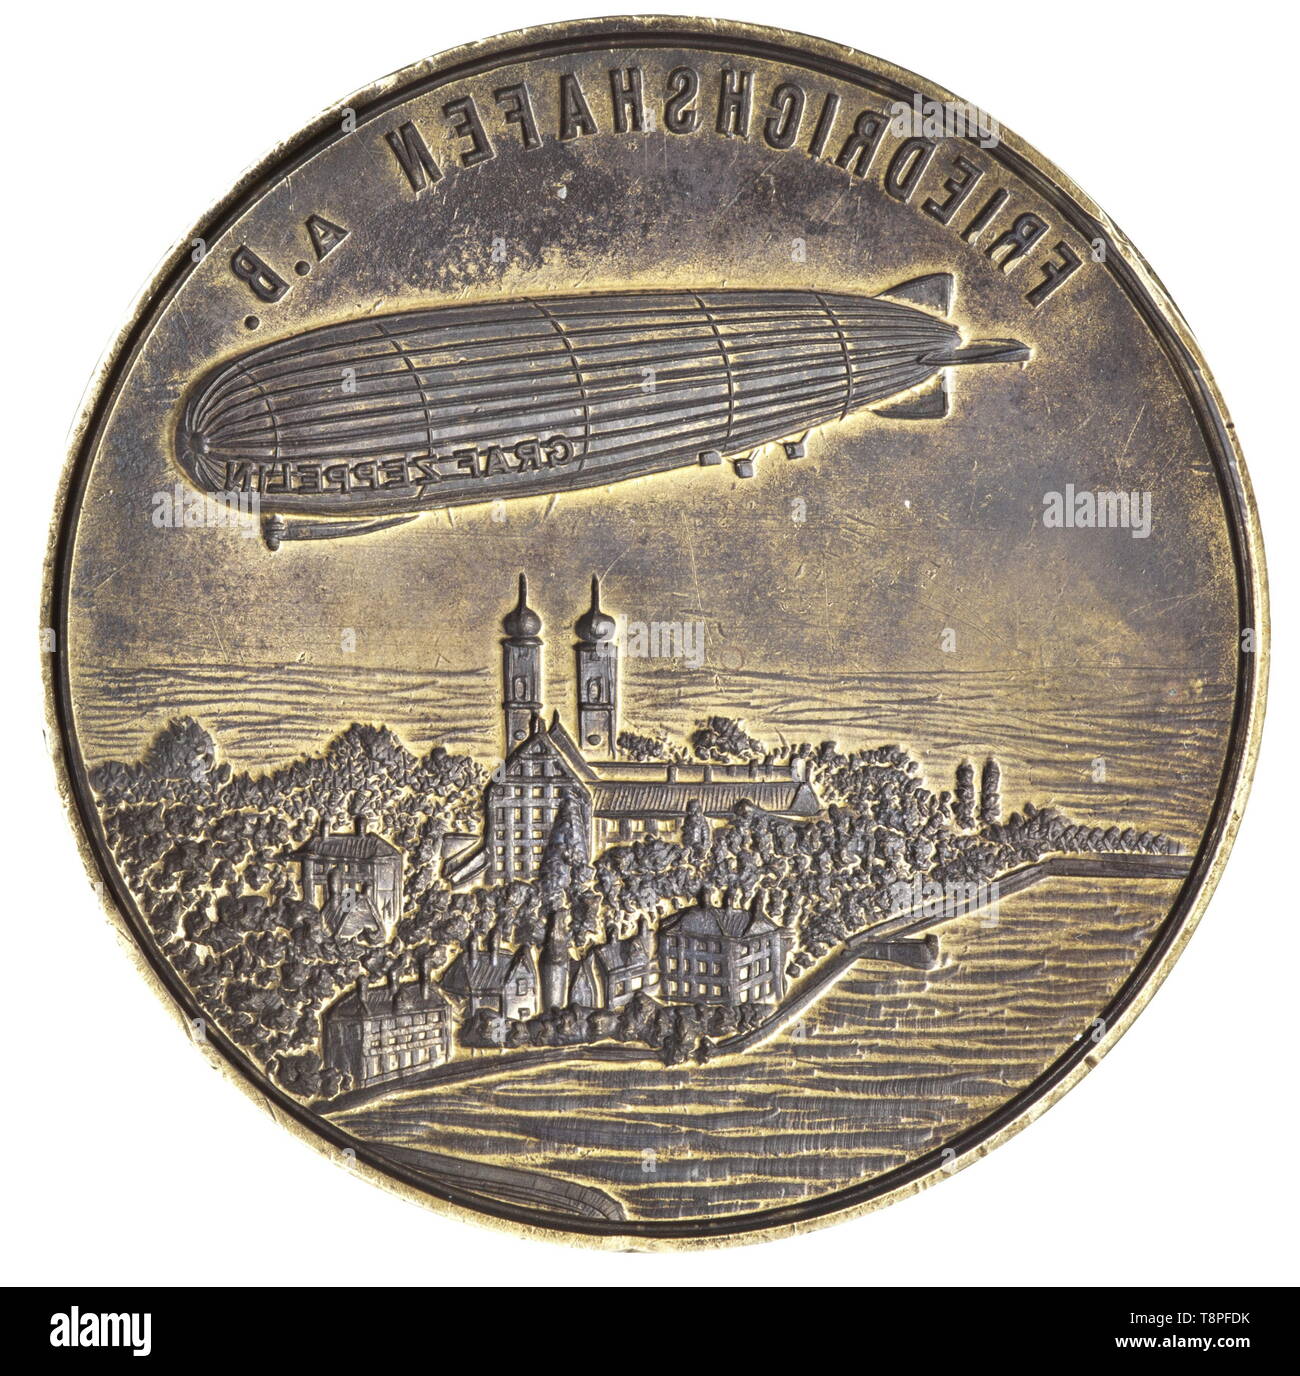 Un sceau de la 'Graf Zeppelin' airship un grand sceau en laiton avec le vaisseau aérien LZ 127 "Graf Zeppelin" au-dessus de la ville de Friedrichshafen sur le lac Bodensee coupés dans la surface du joint. L'inscription, 'BORDSIEGEL D-LZ 127 "Graf Zeppelin" WELT-FAHRT 1929' ('SHIP JOINT DU D-LZ 127 "Graf Zeppelin" TOUR DU MONDE 1929') est gravée sur la jante. Poignée en bois tourné. Hauteur 11,5 cm. L 'Graf Zeppelin' a été 236,6 m de long avec un diamètre de 30,5 m et un volume de gaz porteur de 105 000 mètres cubes. Il a été construit à Friedrichshafen b, Additional-Rights Clearance-Info-Not-Available- Banque D'Images